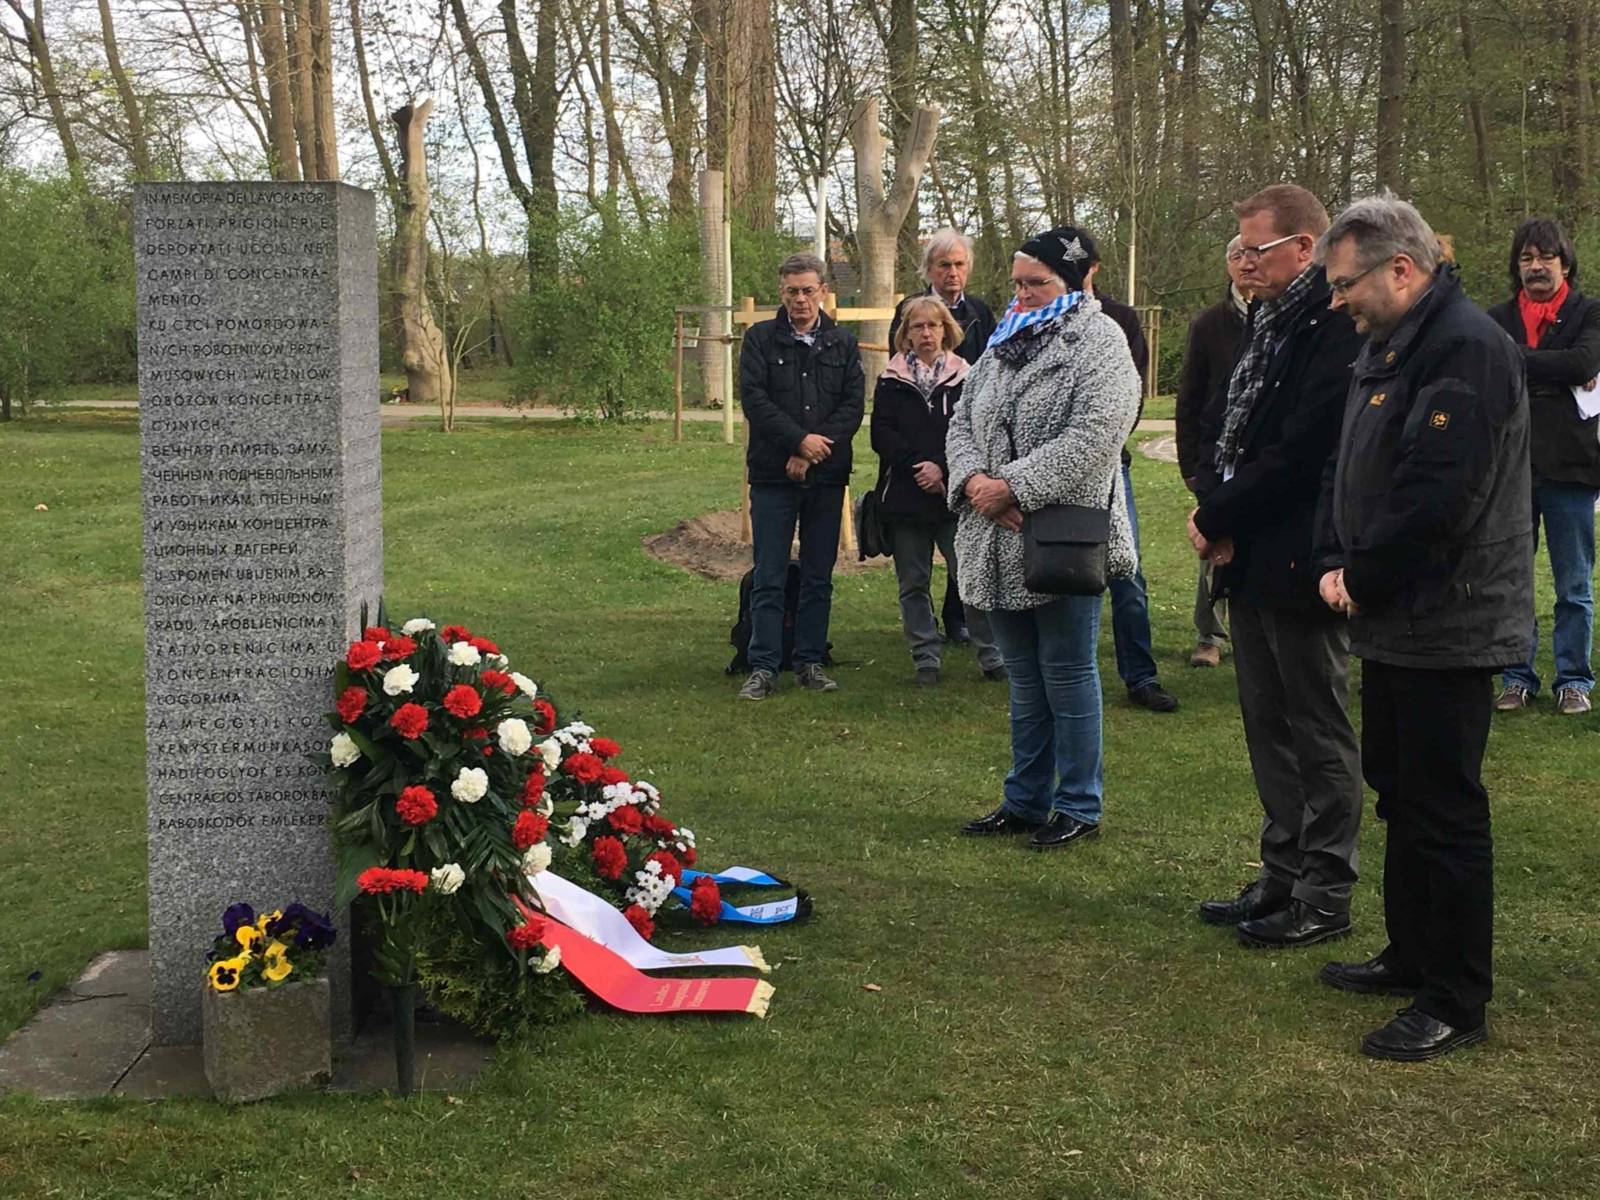 Kranzniederlegung am Mahnmal für die 154 Ermordeten vom 6. April 1945 auf dem Stadtfriedhof Seelhorst